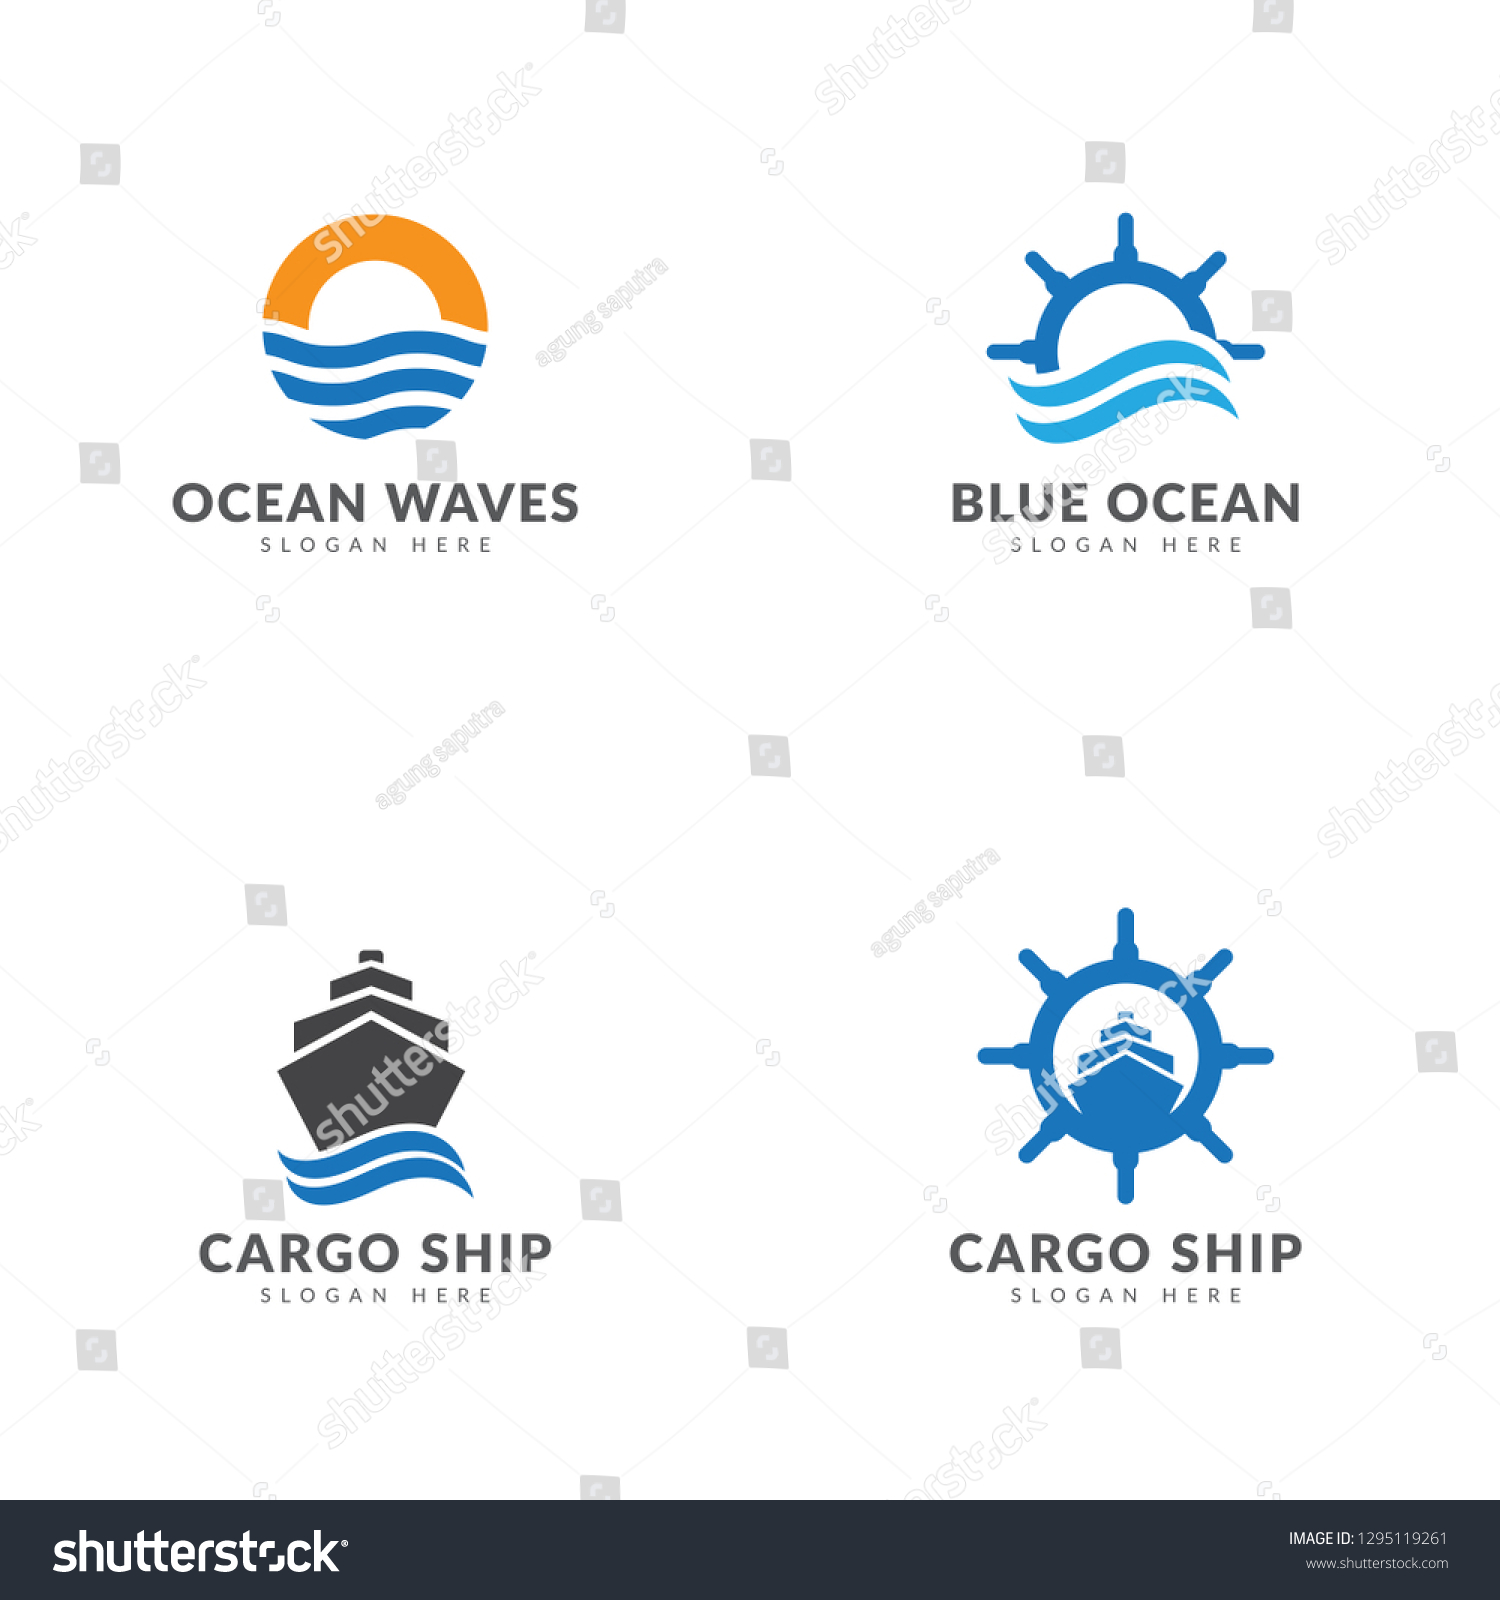 Cargo Ship Logo Template Collection Ship Stock Vector Royalty Free Shutterstock